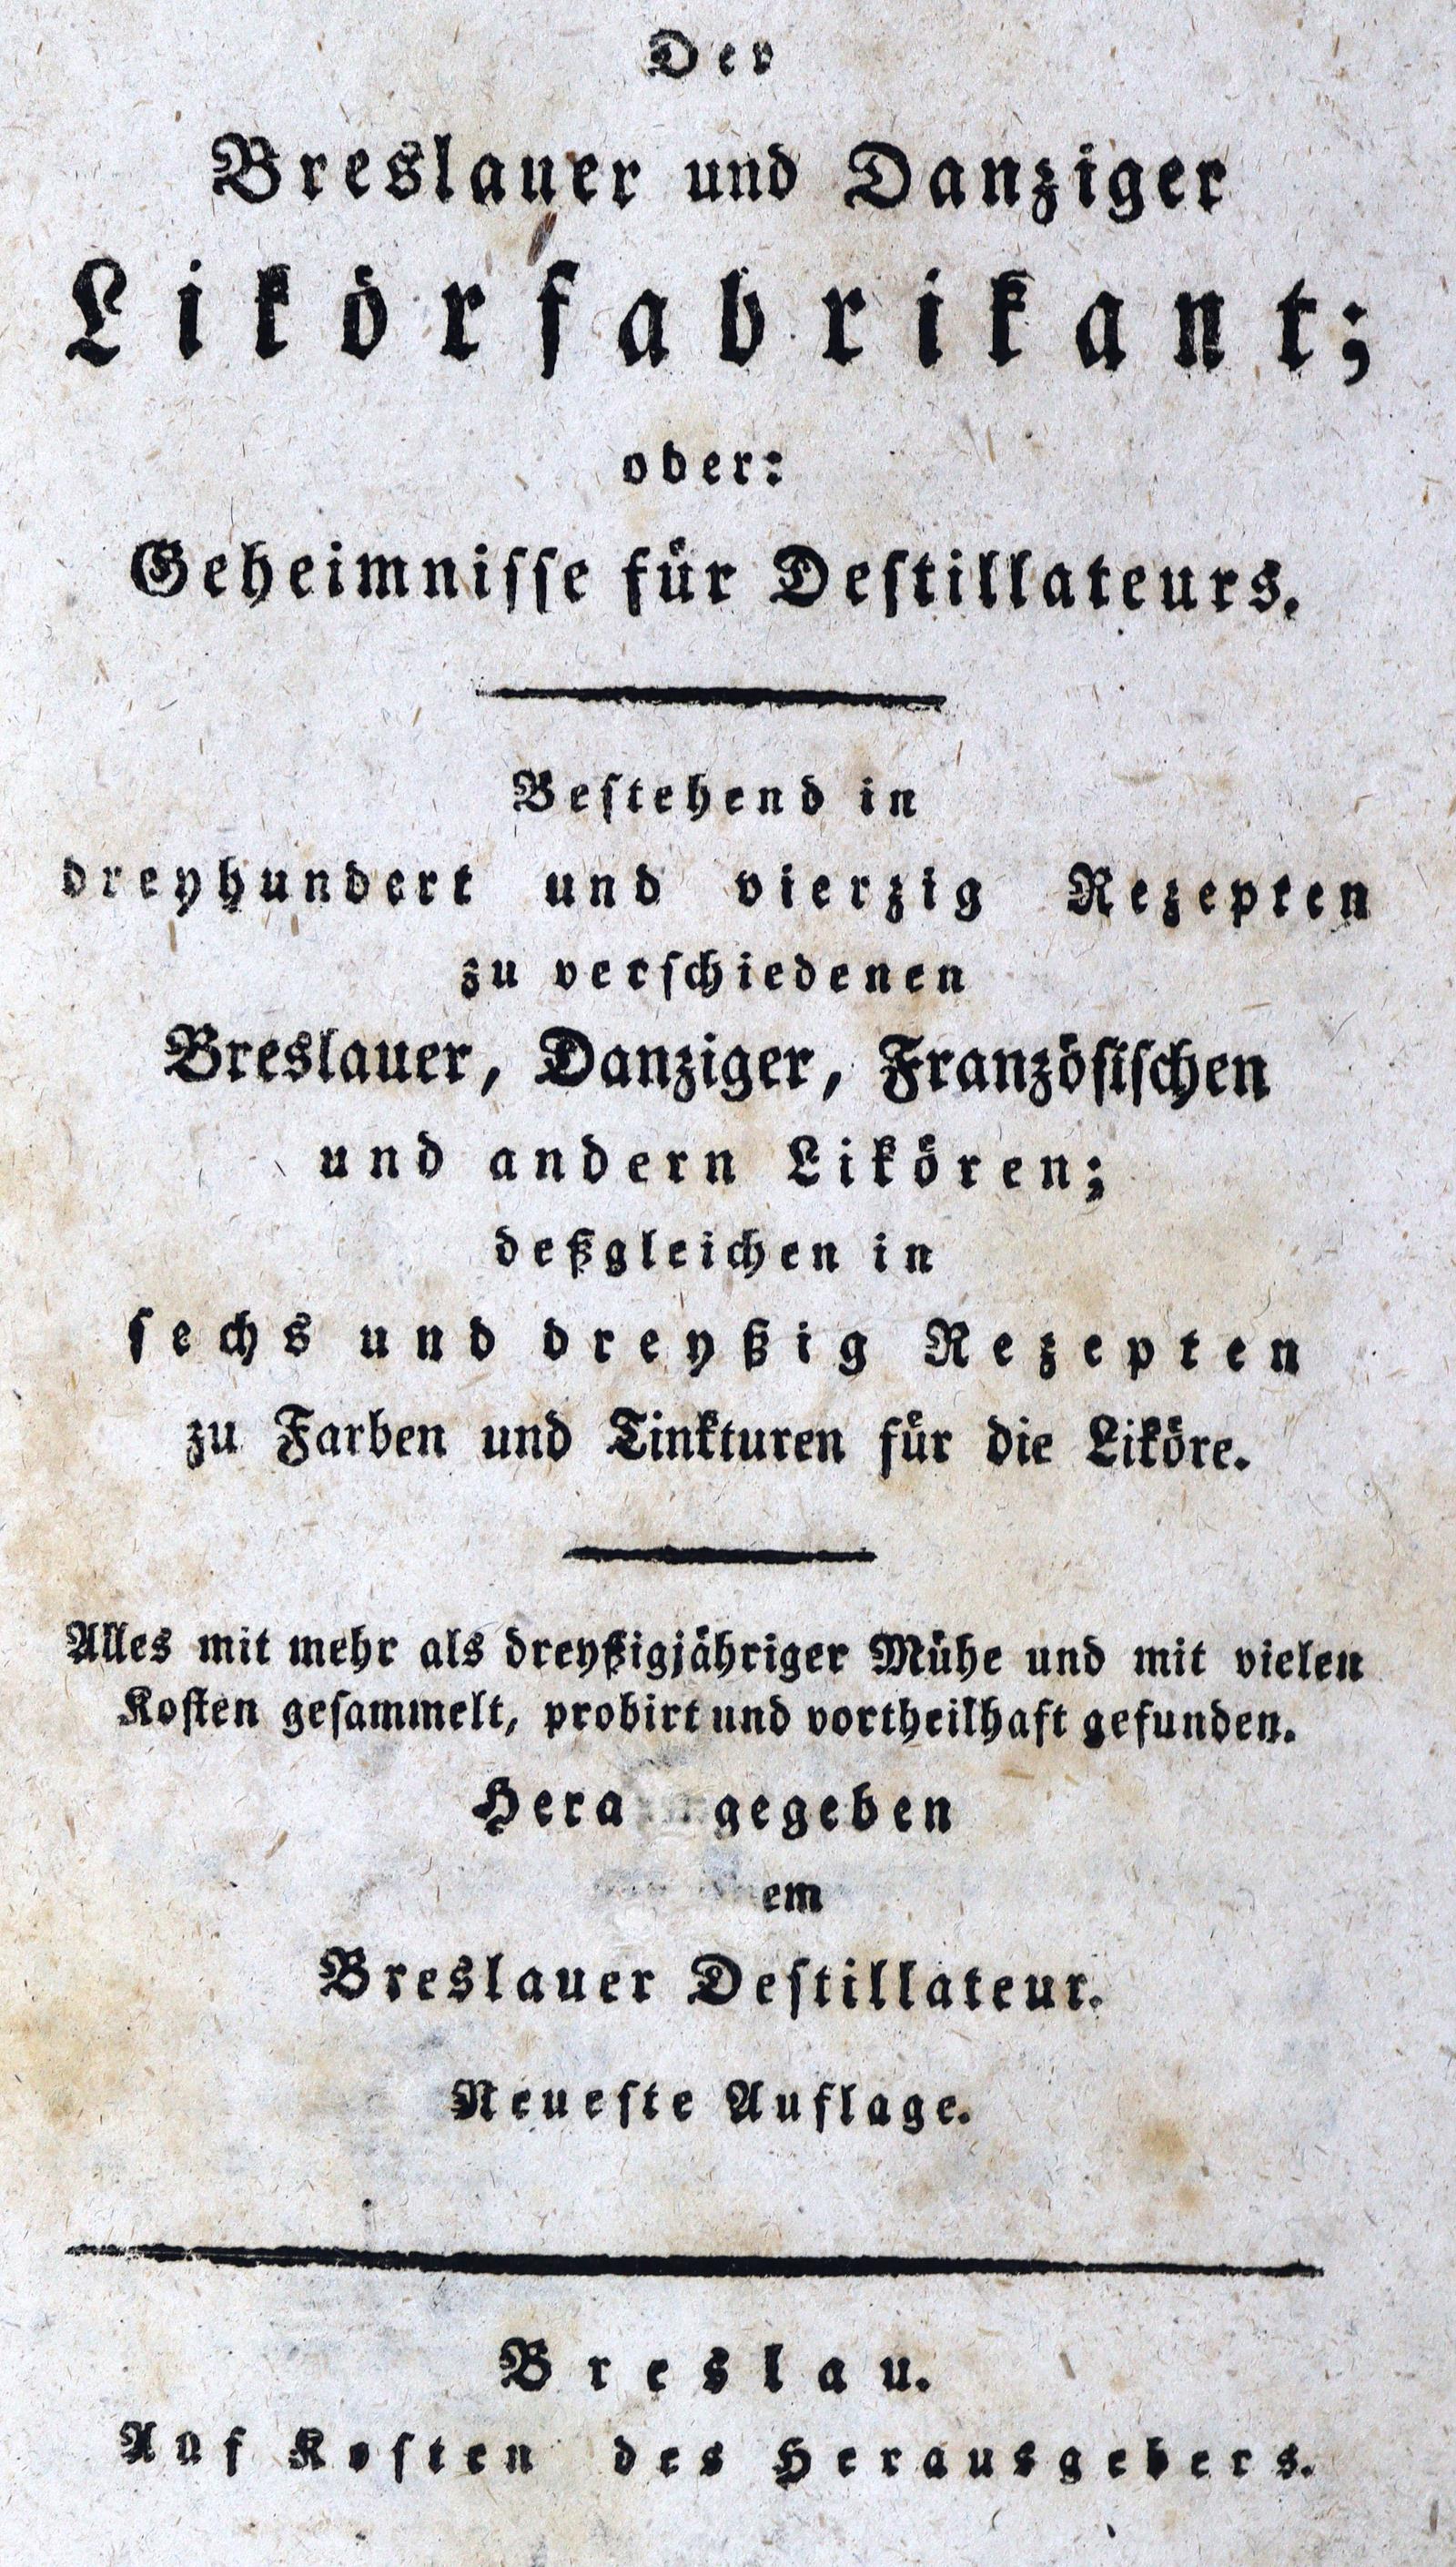 Breslauer und Danziger Likörfabrikant, Der, | Bild Nr.1